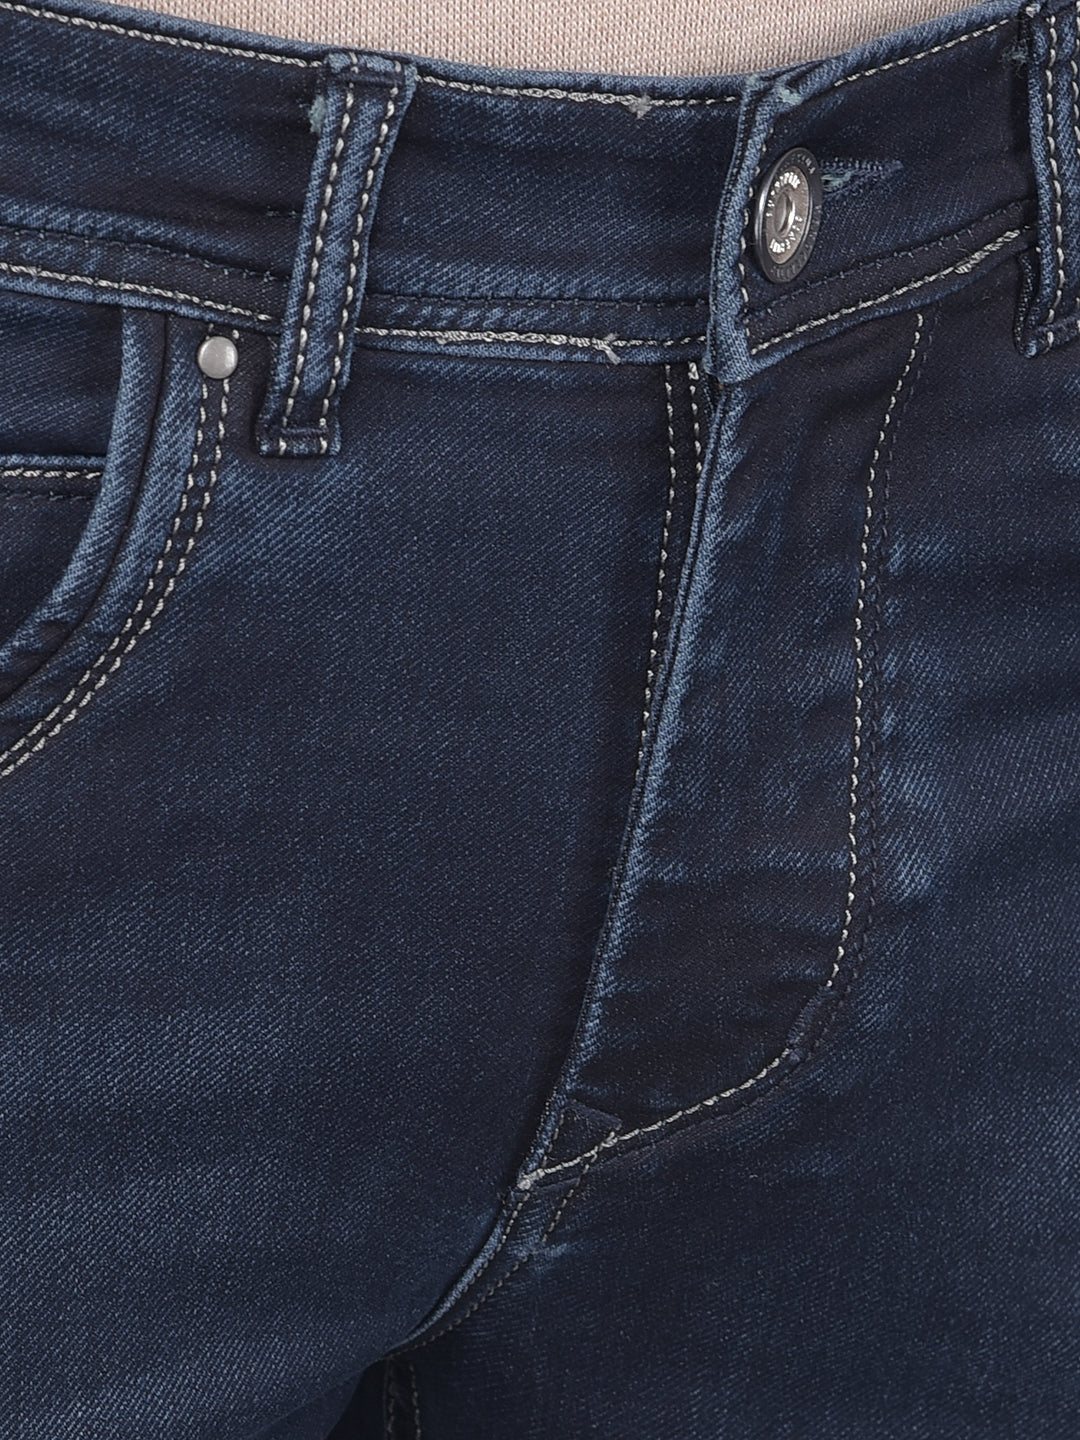 Navy Blue Jeans-Men Jeans-Crimsoune Club